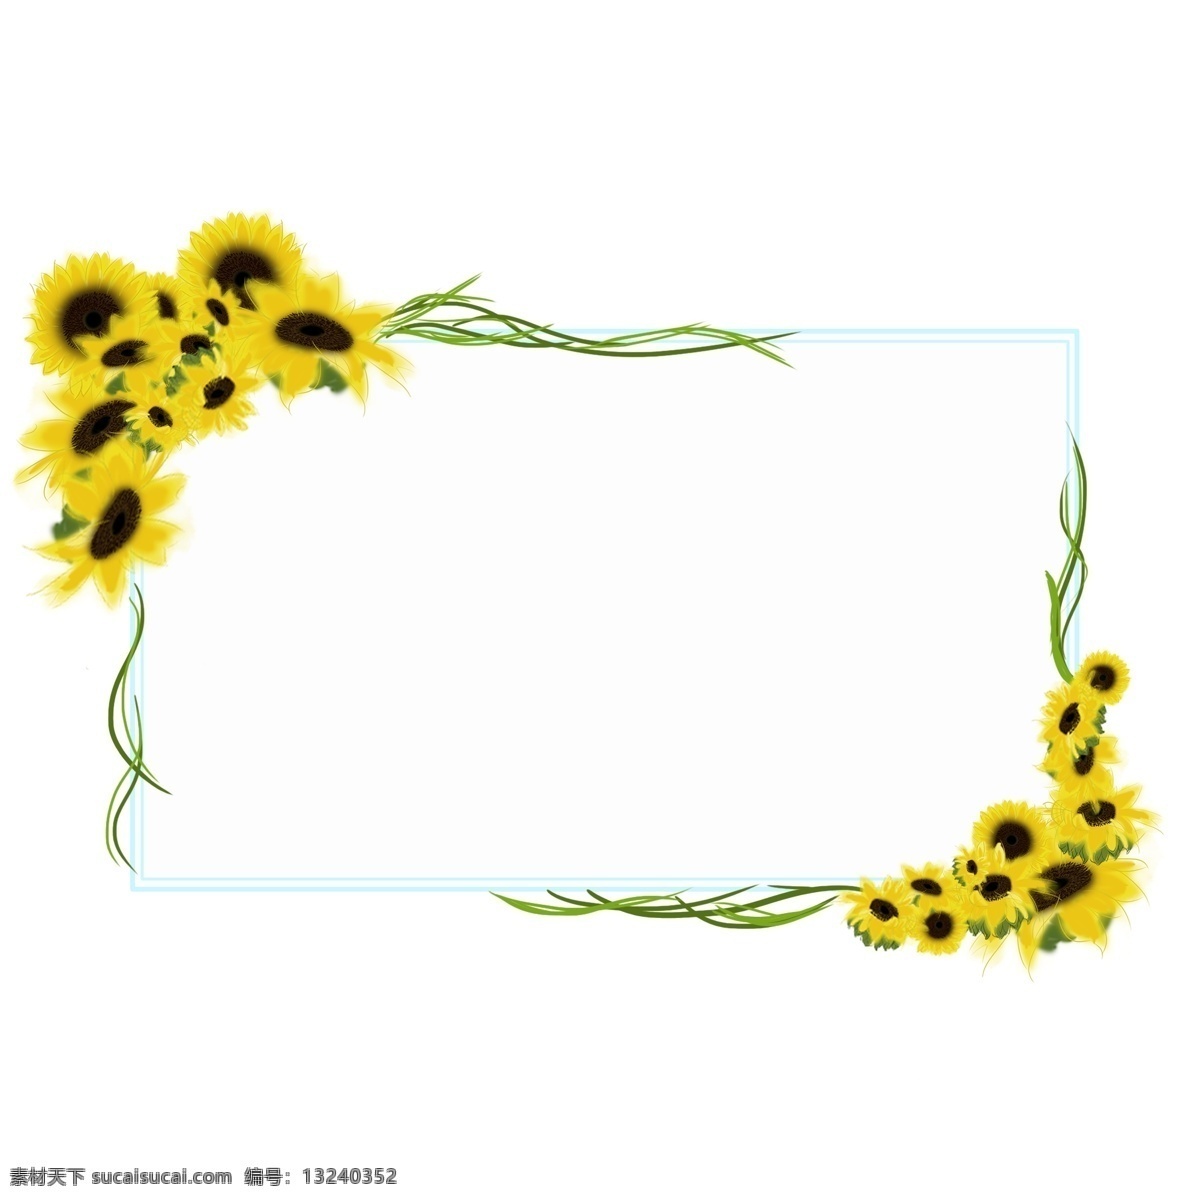 向日葵 手绘 藤蔓 边框 装饰 元素 太阳花 手绘花 手绘植物 手绘向日葵 百搭